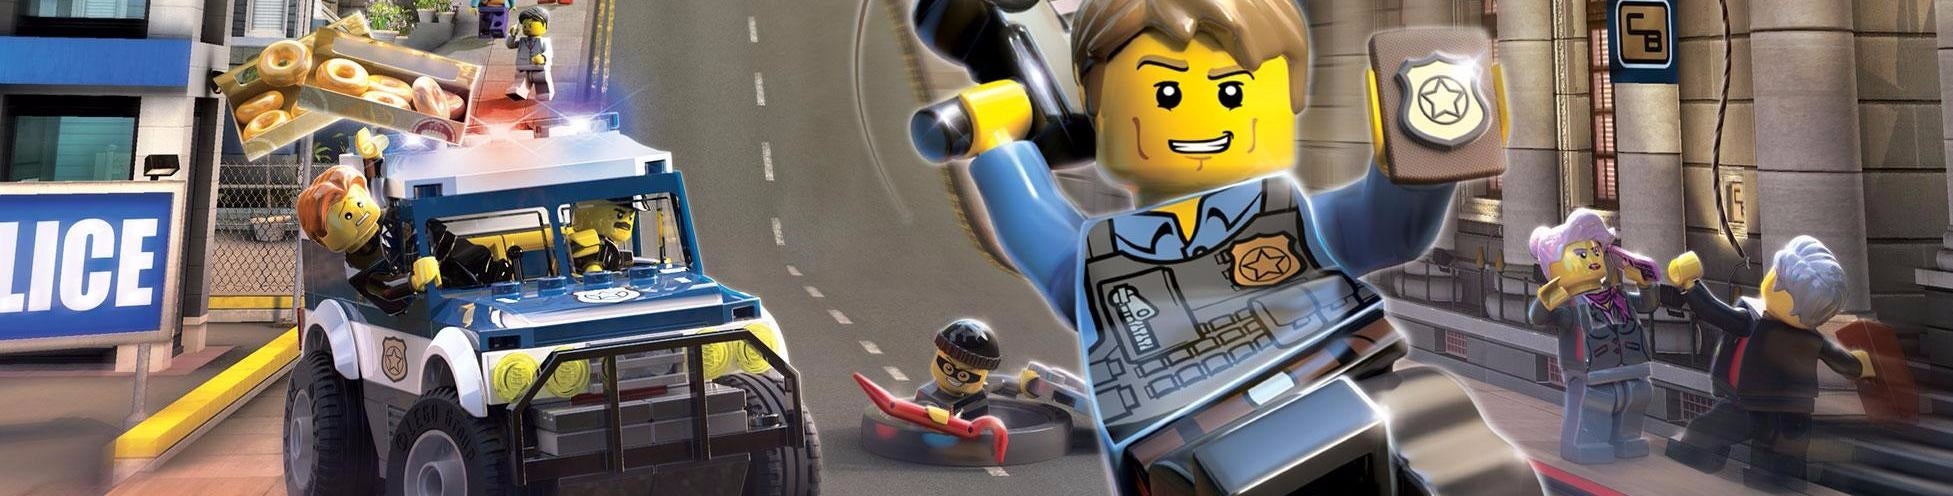 Immagine di LEGO City Undercover su Switch regge bene il confronto con PS4 - analisi comparativa